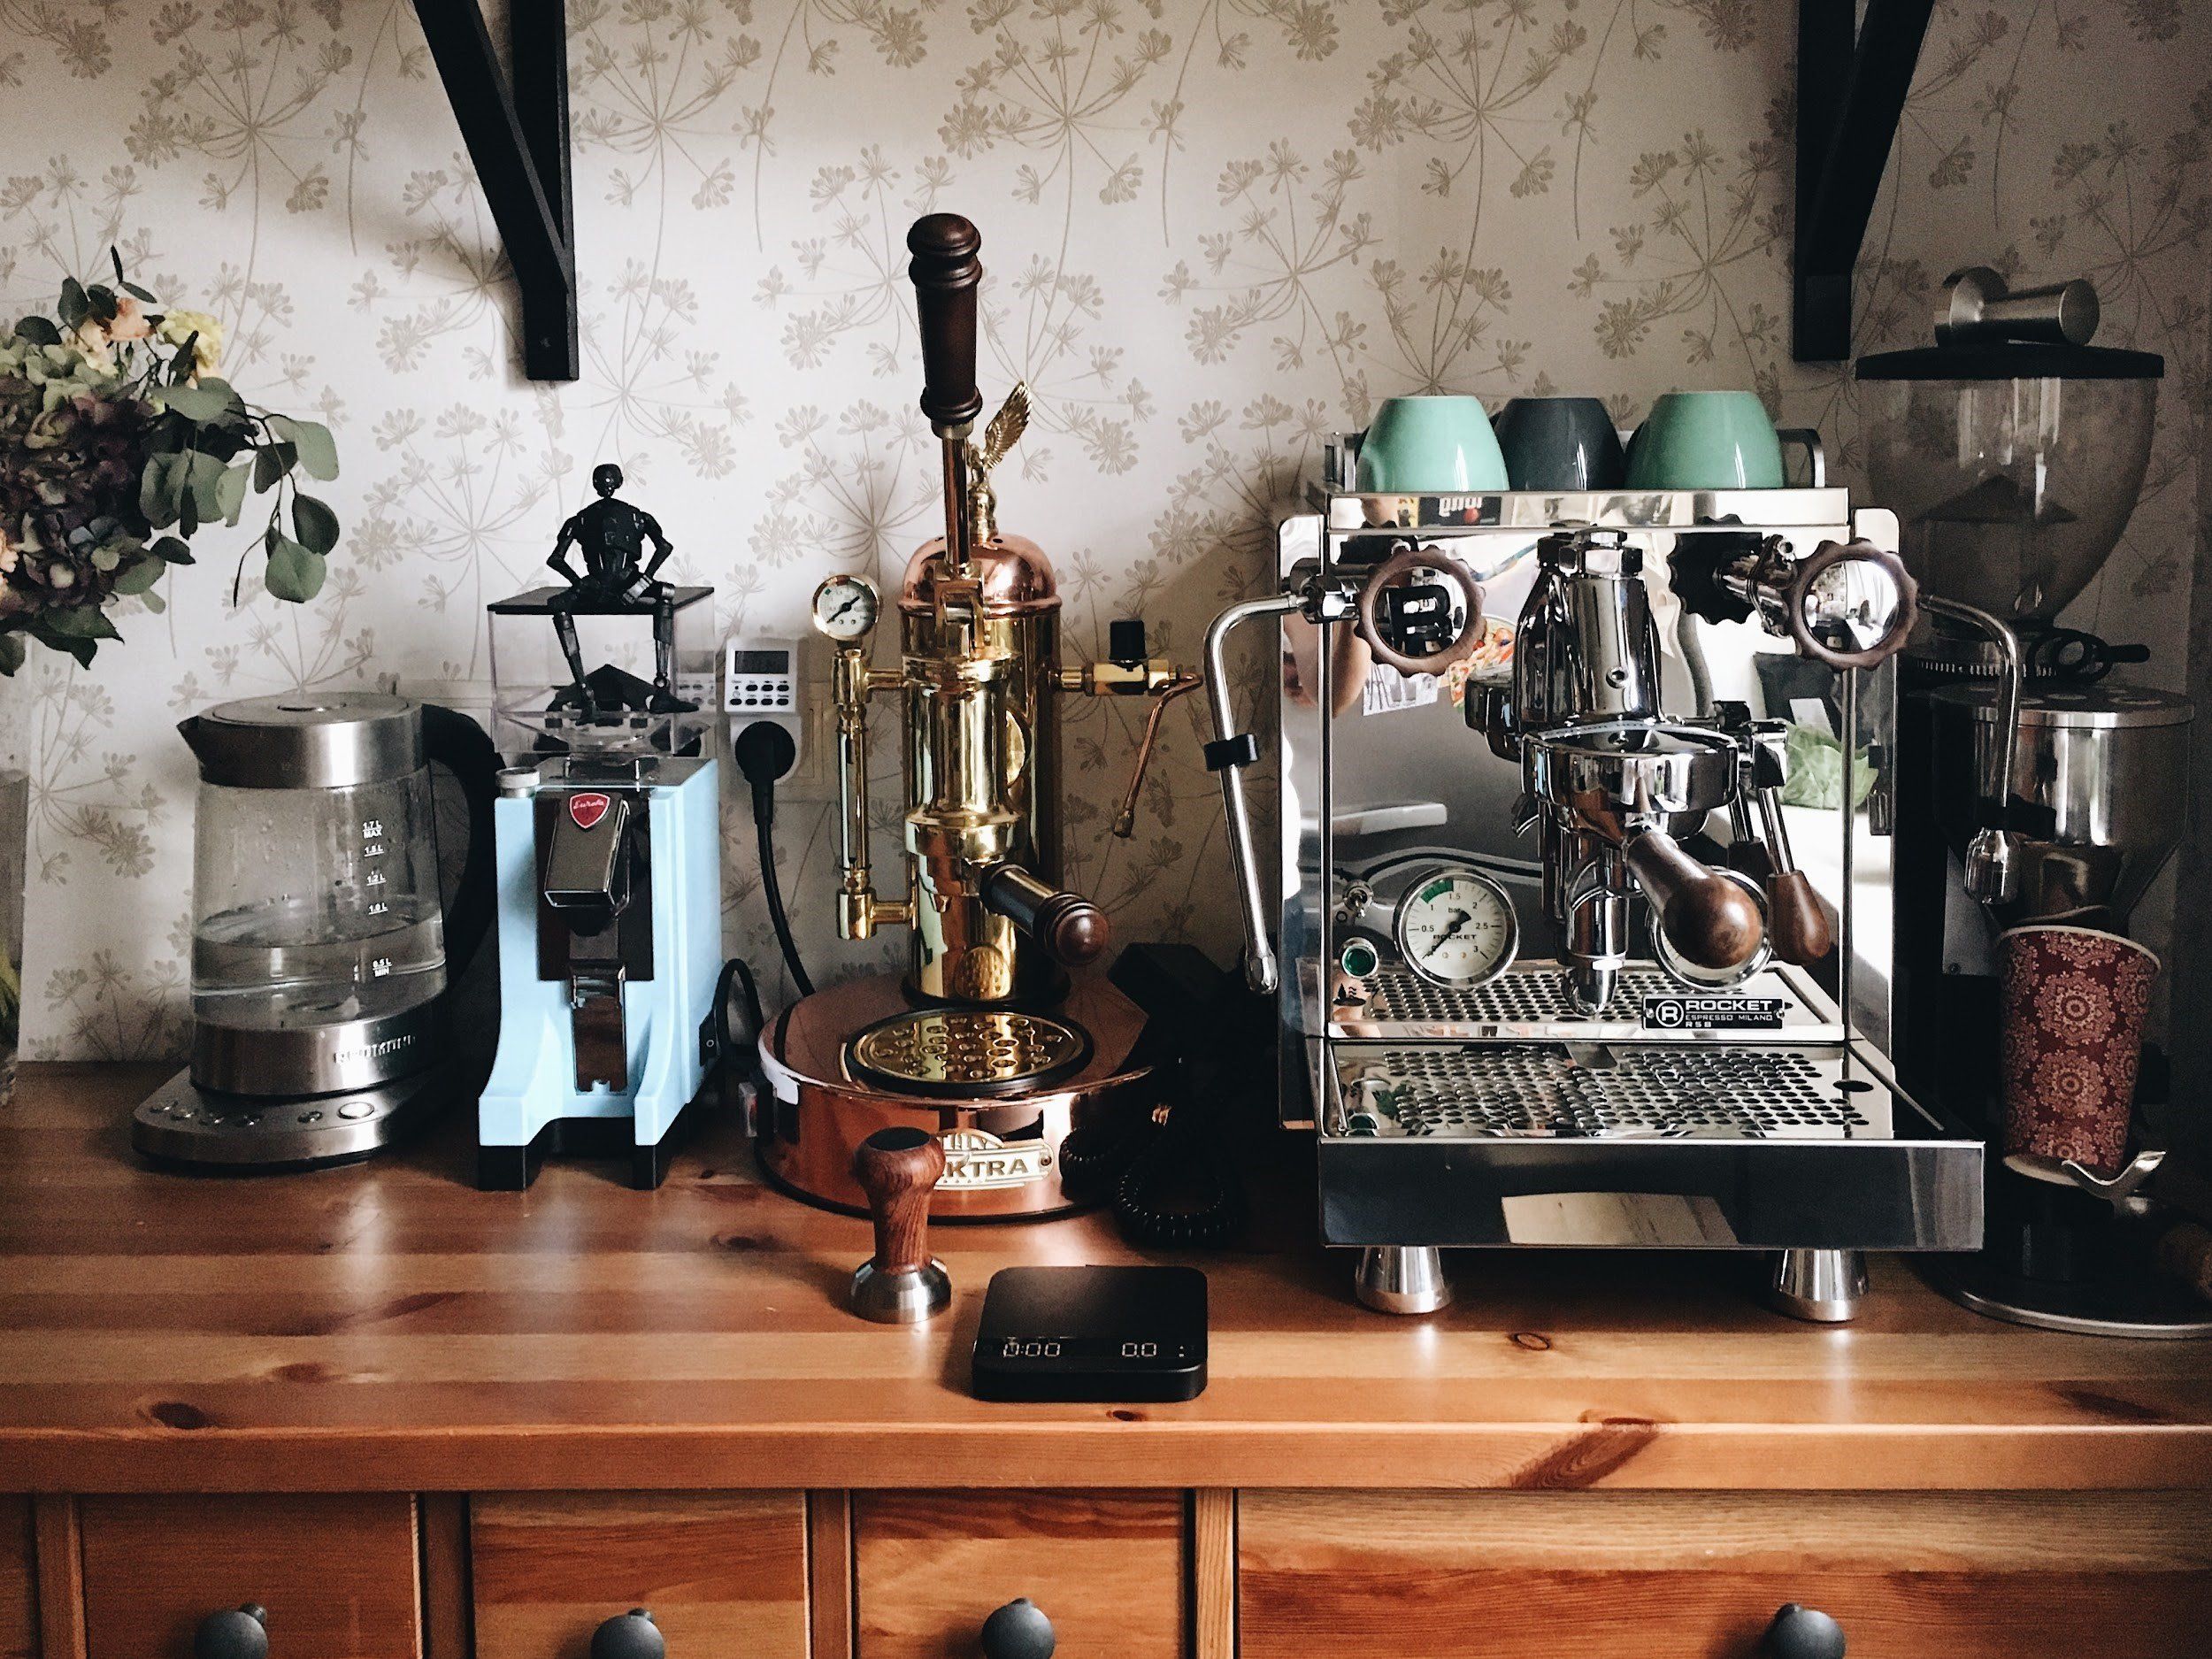 How To Build A Prosumer Home Espresso Setup - JavaPresse Coffee Company